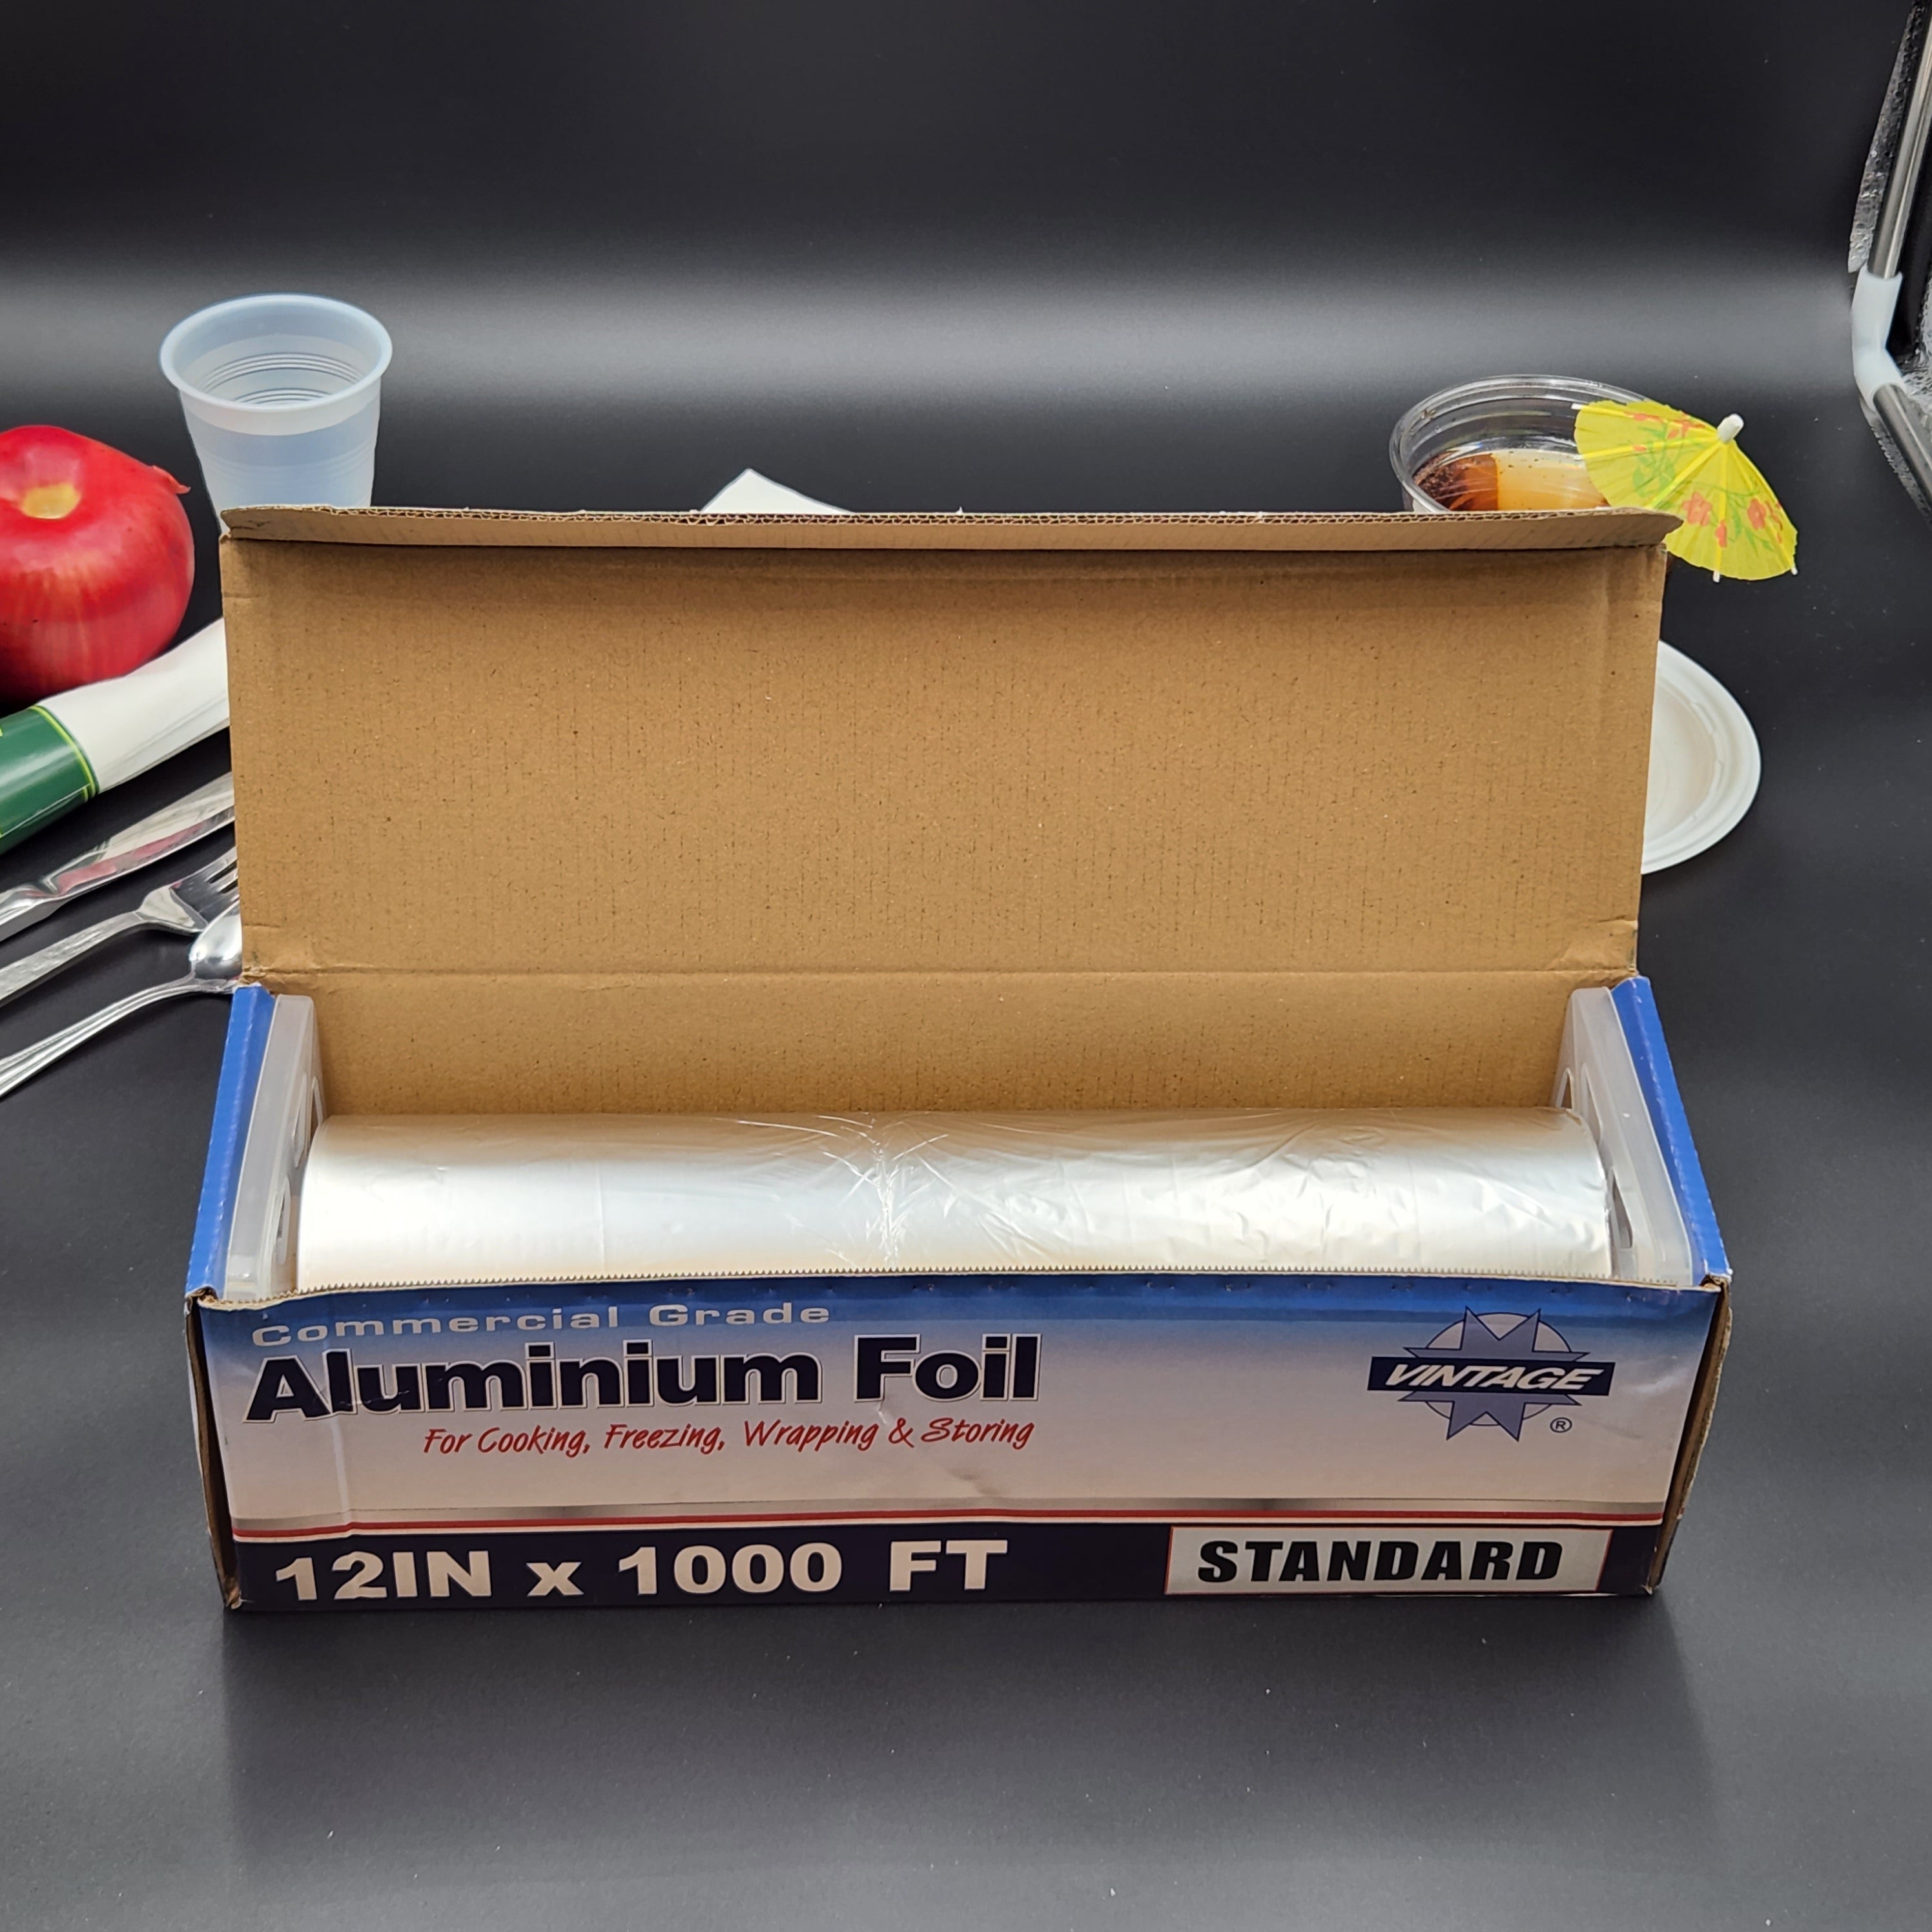 Standard Food Service Aluminum Foil Roll 12" X 1000' - 1 Roll